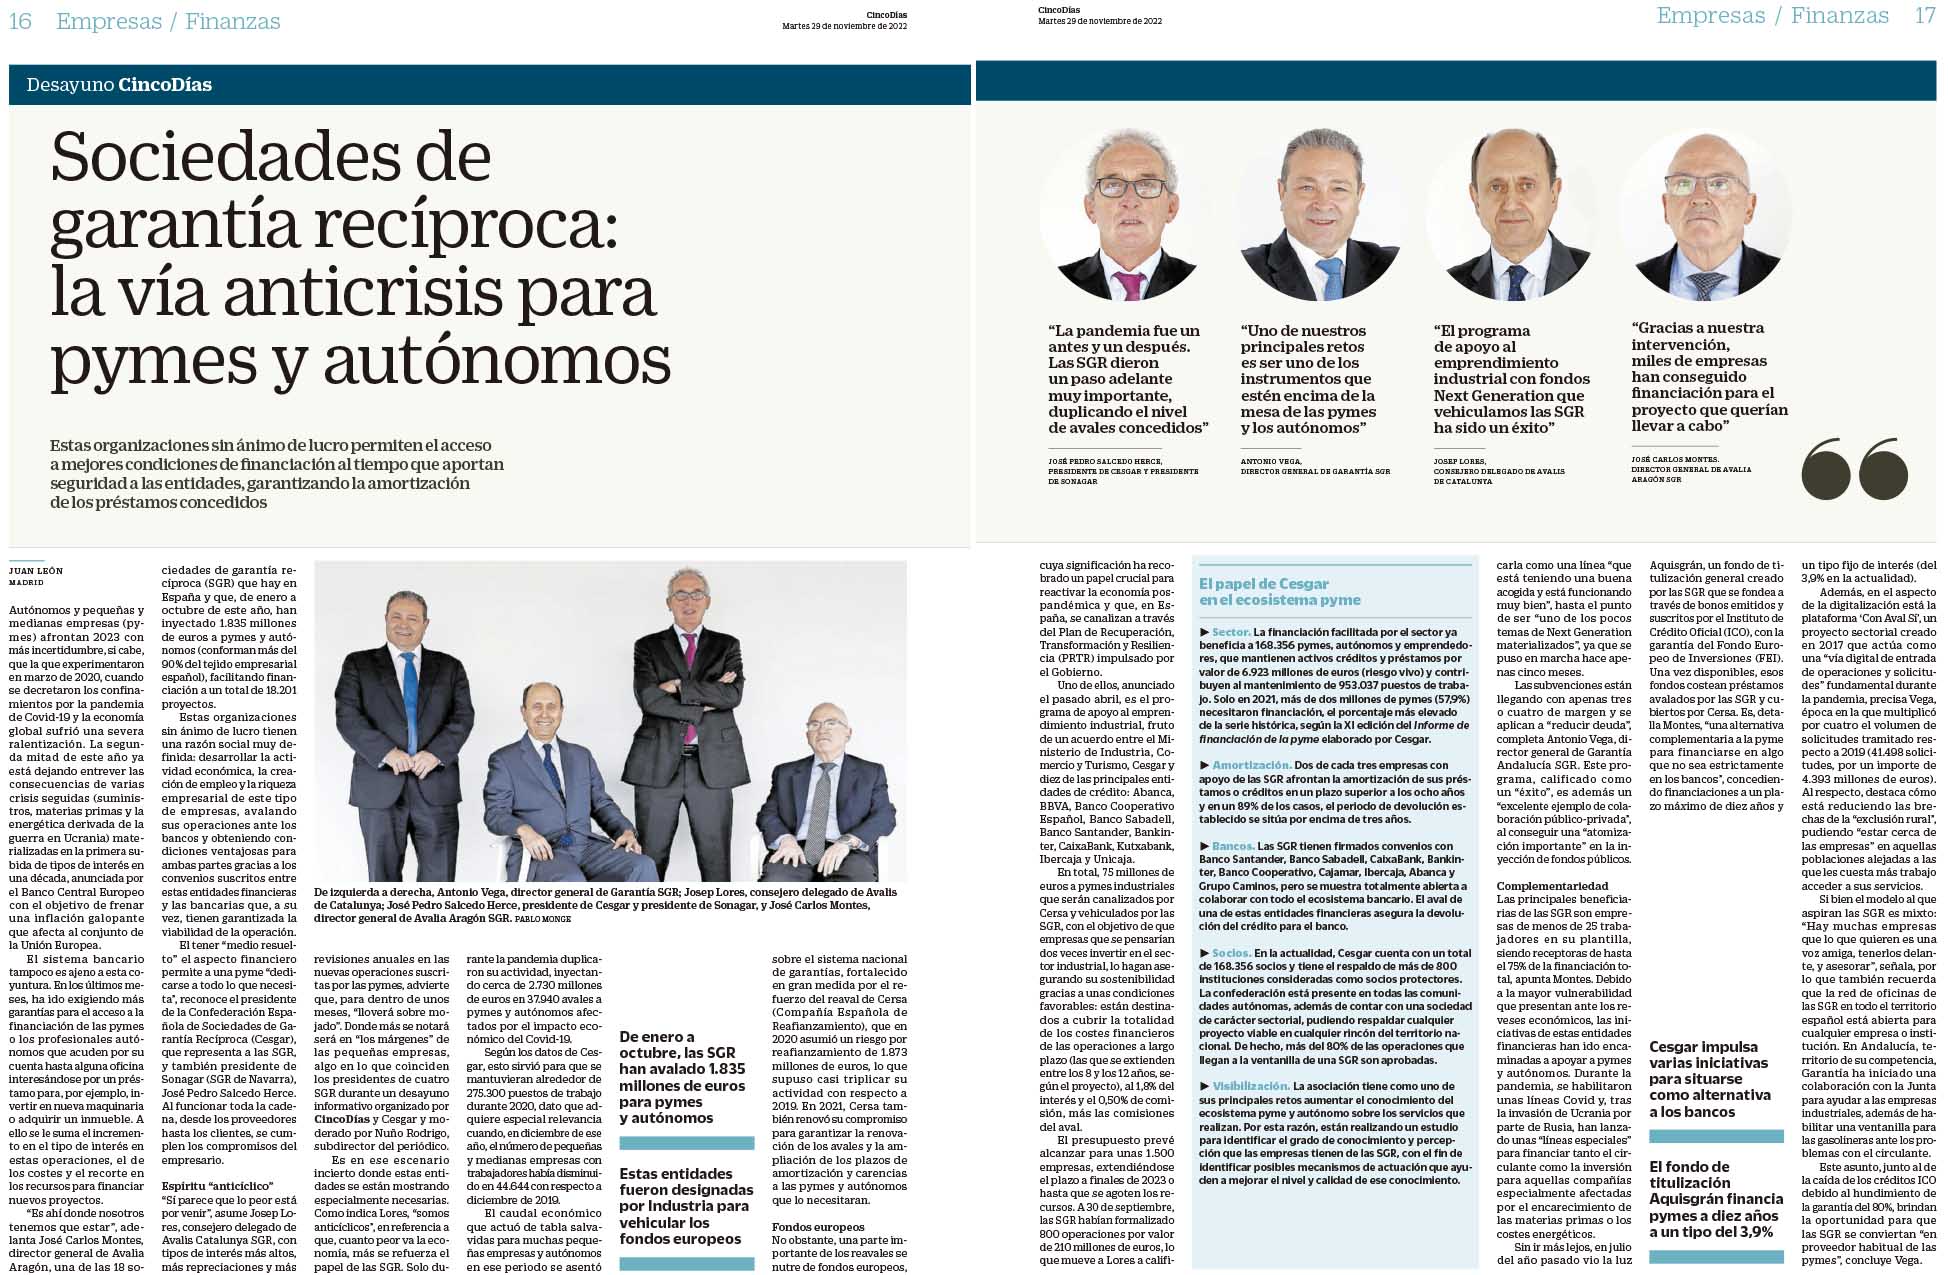 imagen de Jose Carlos Montes, director general de Avalia Aragón, en el desayuno informativo del diario económico Cinco Días